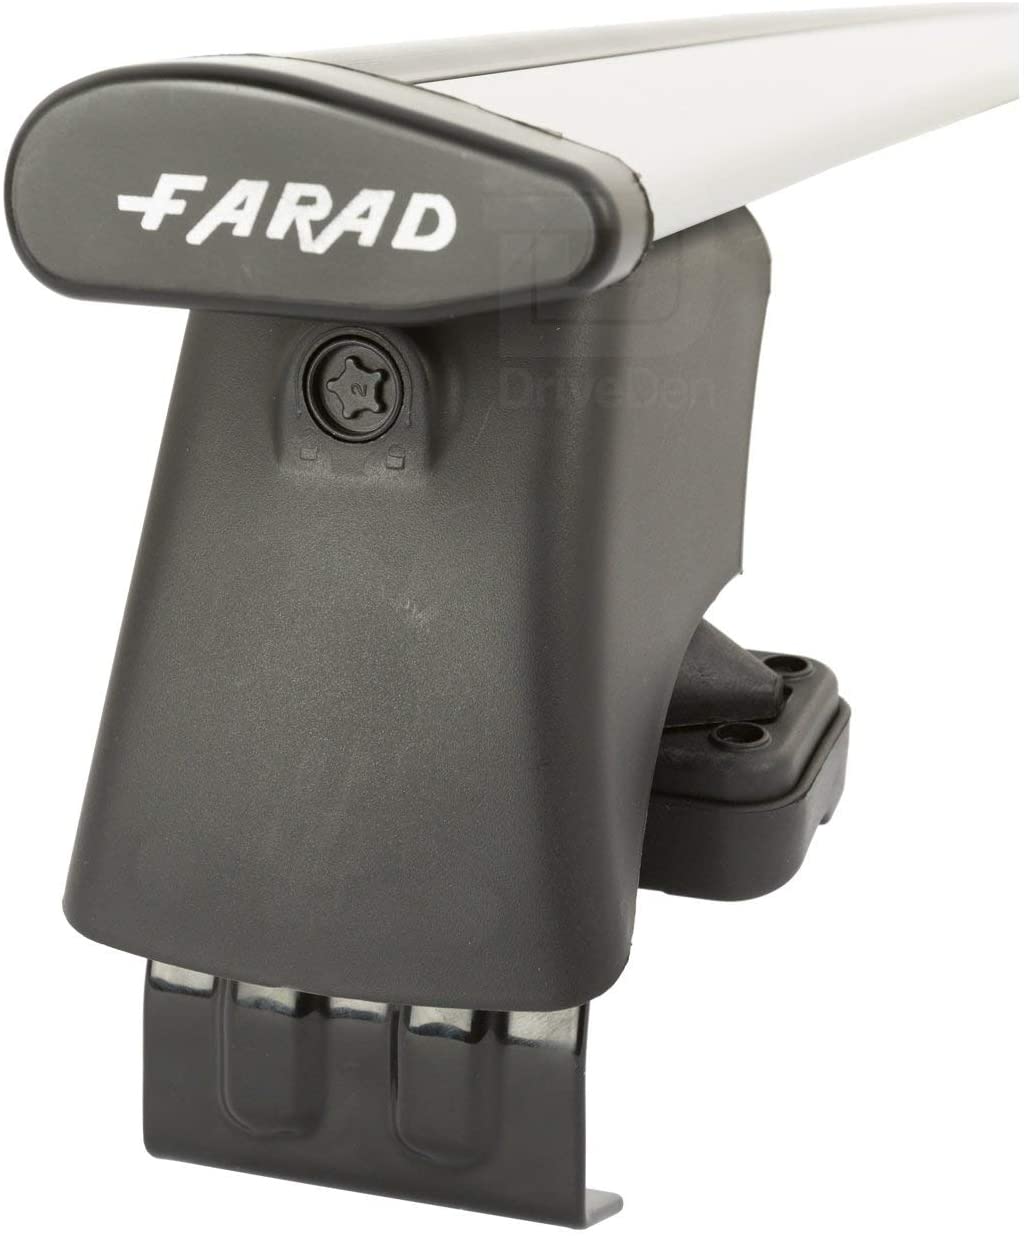 FARAD-Kit H2 per barre portatutto - Nissan Note 2006-2013 (senza corrimano)